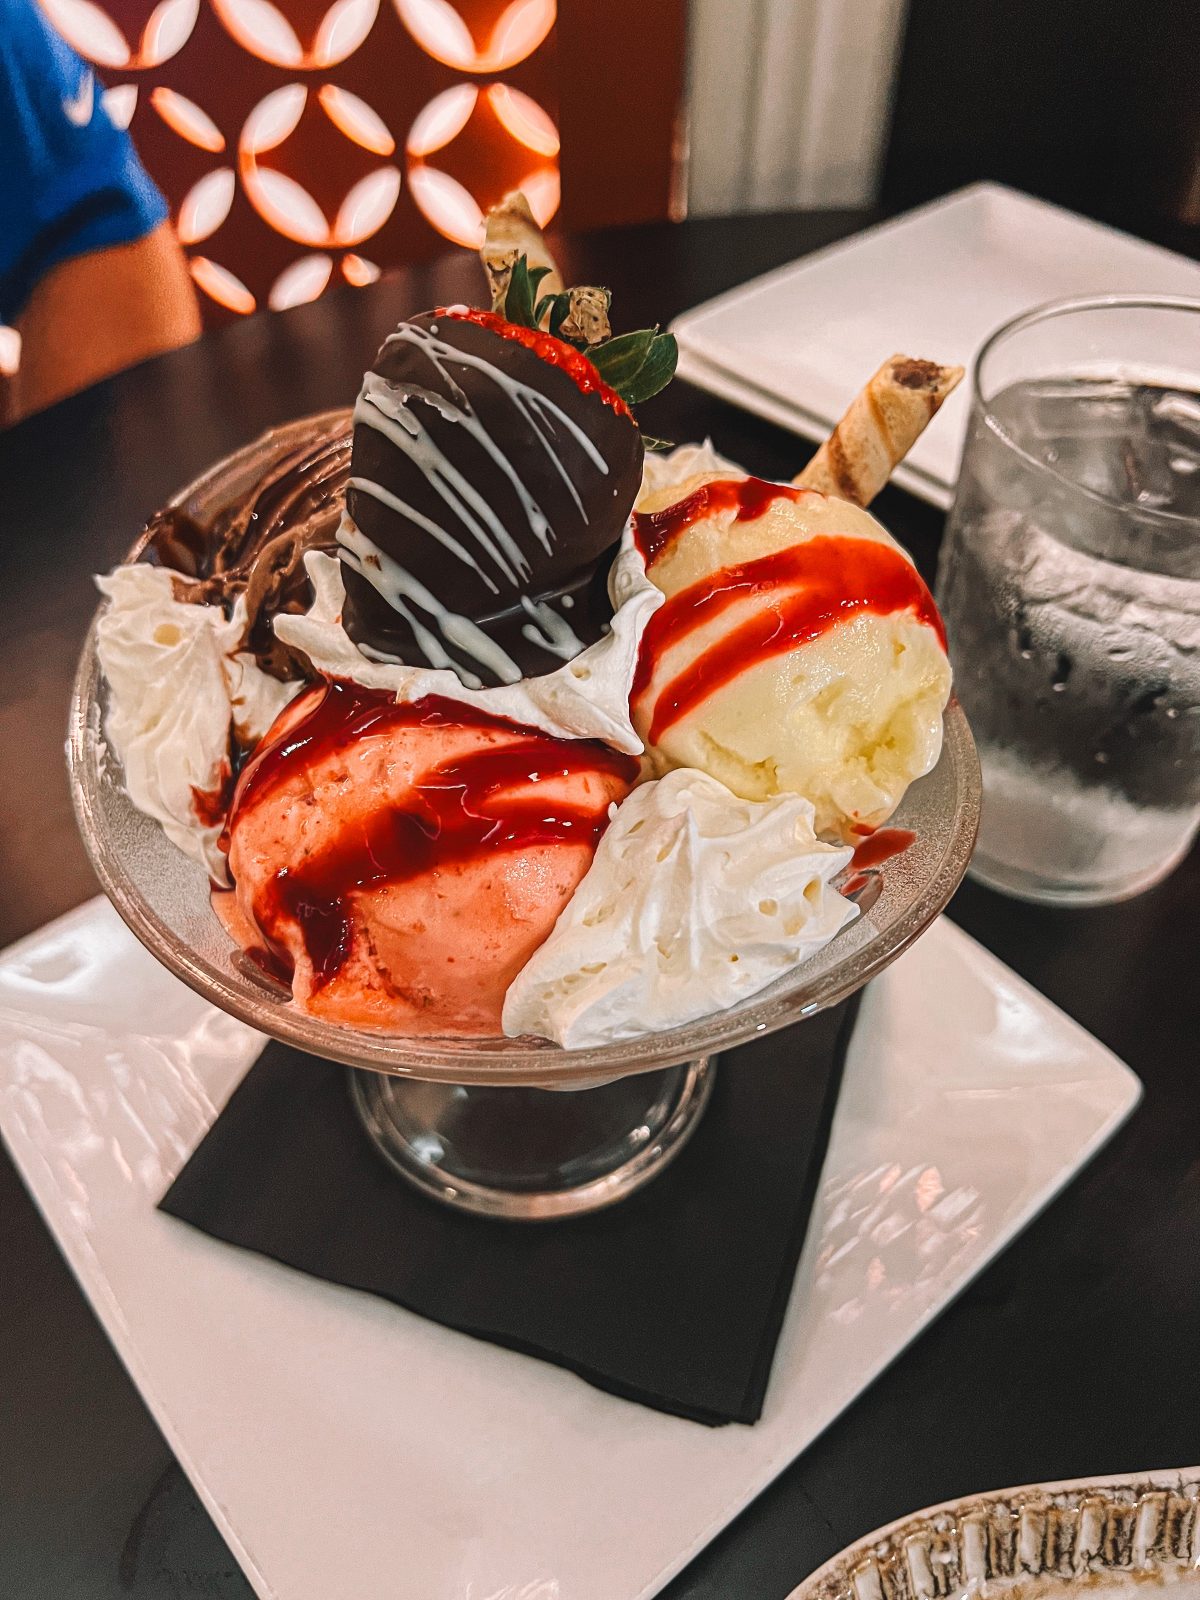 An ice cream sundae sitting on a table.